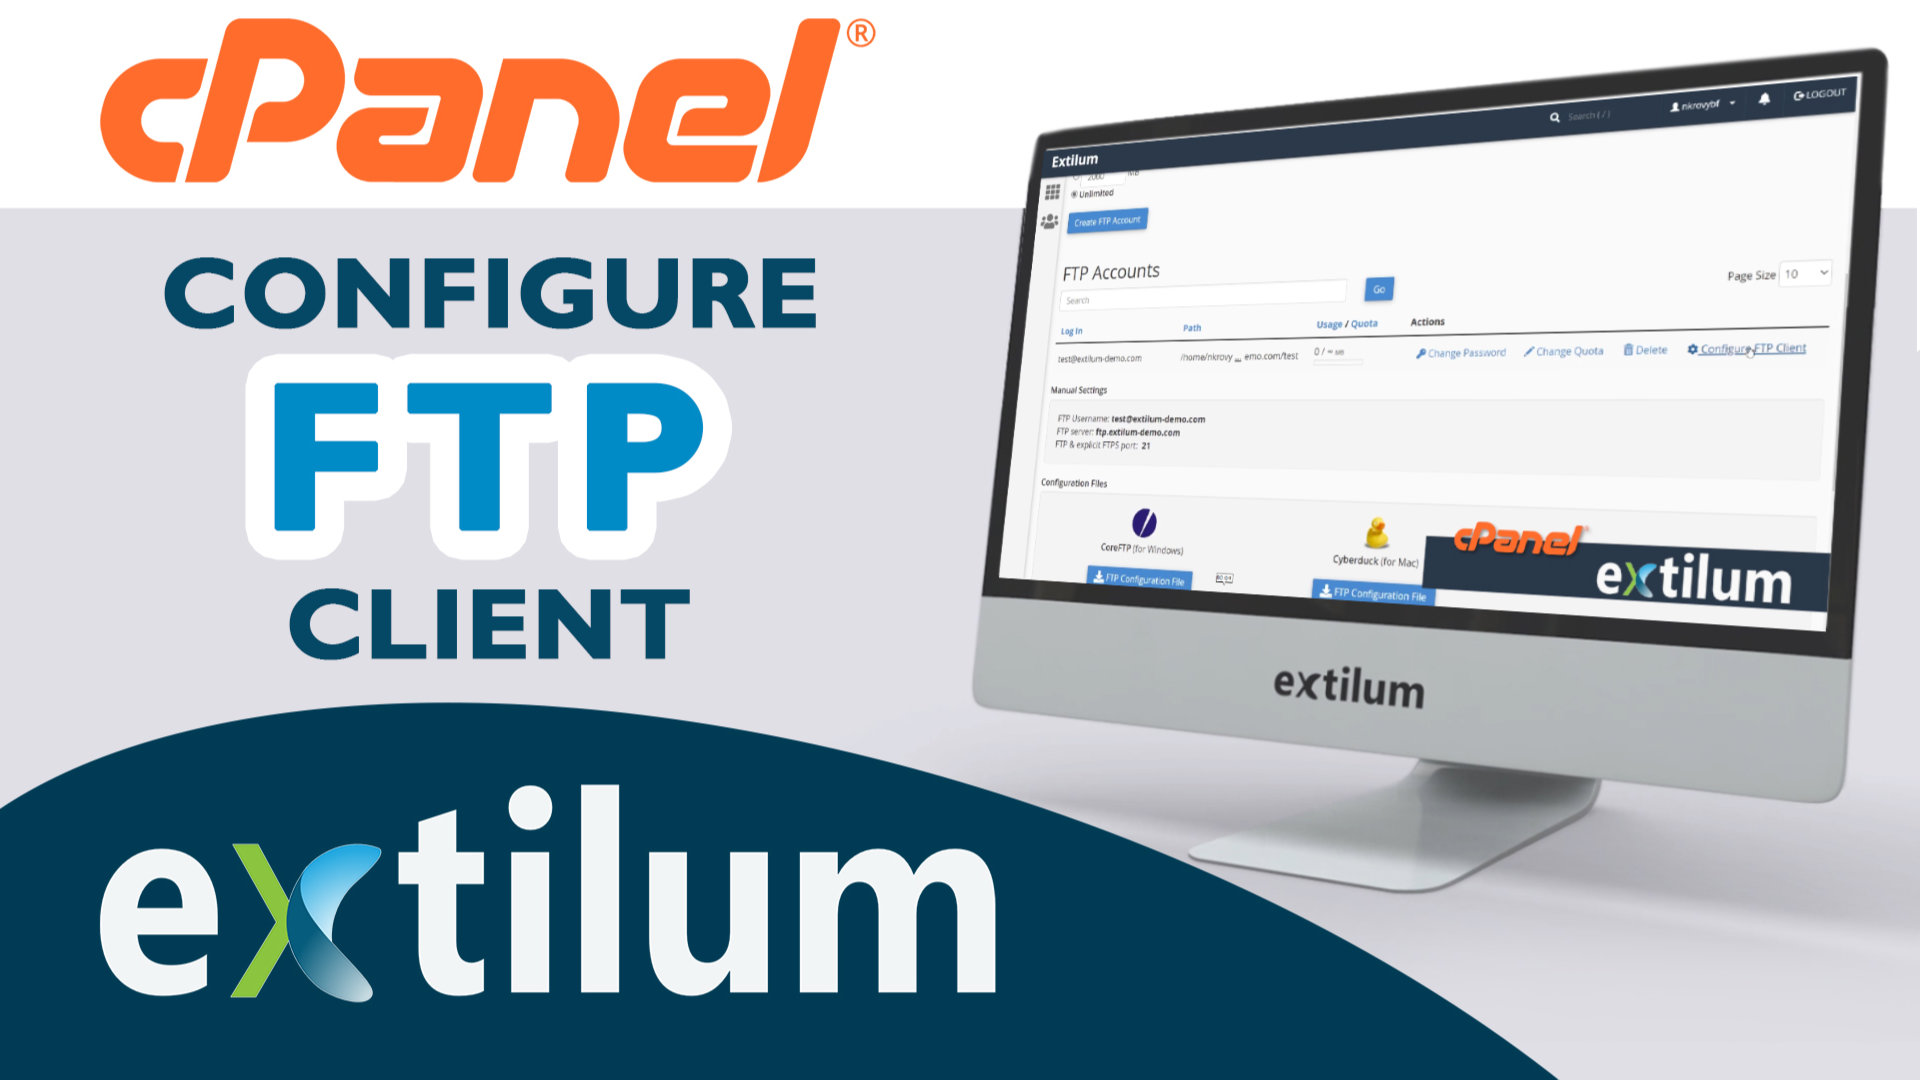 Extilum cpanel - configure ftp client